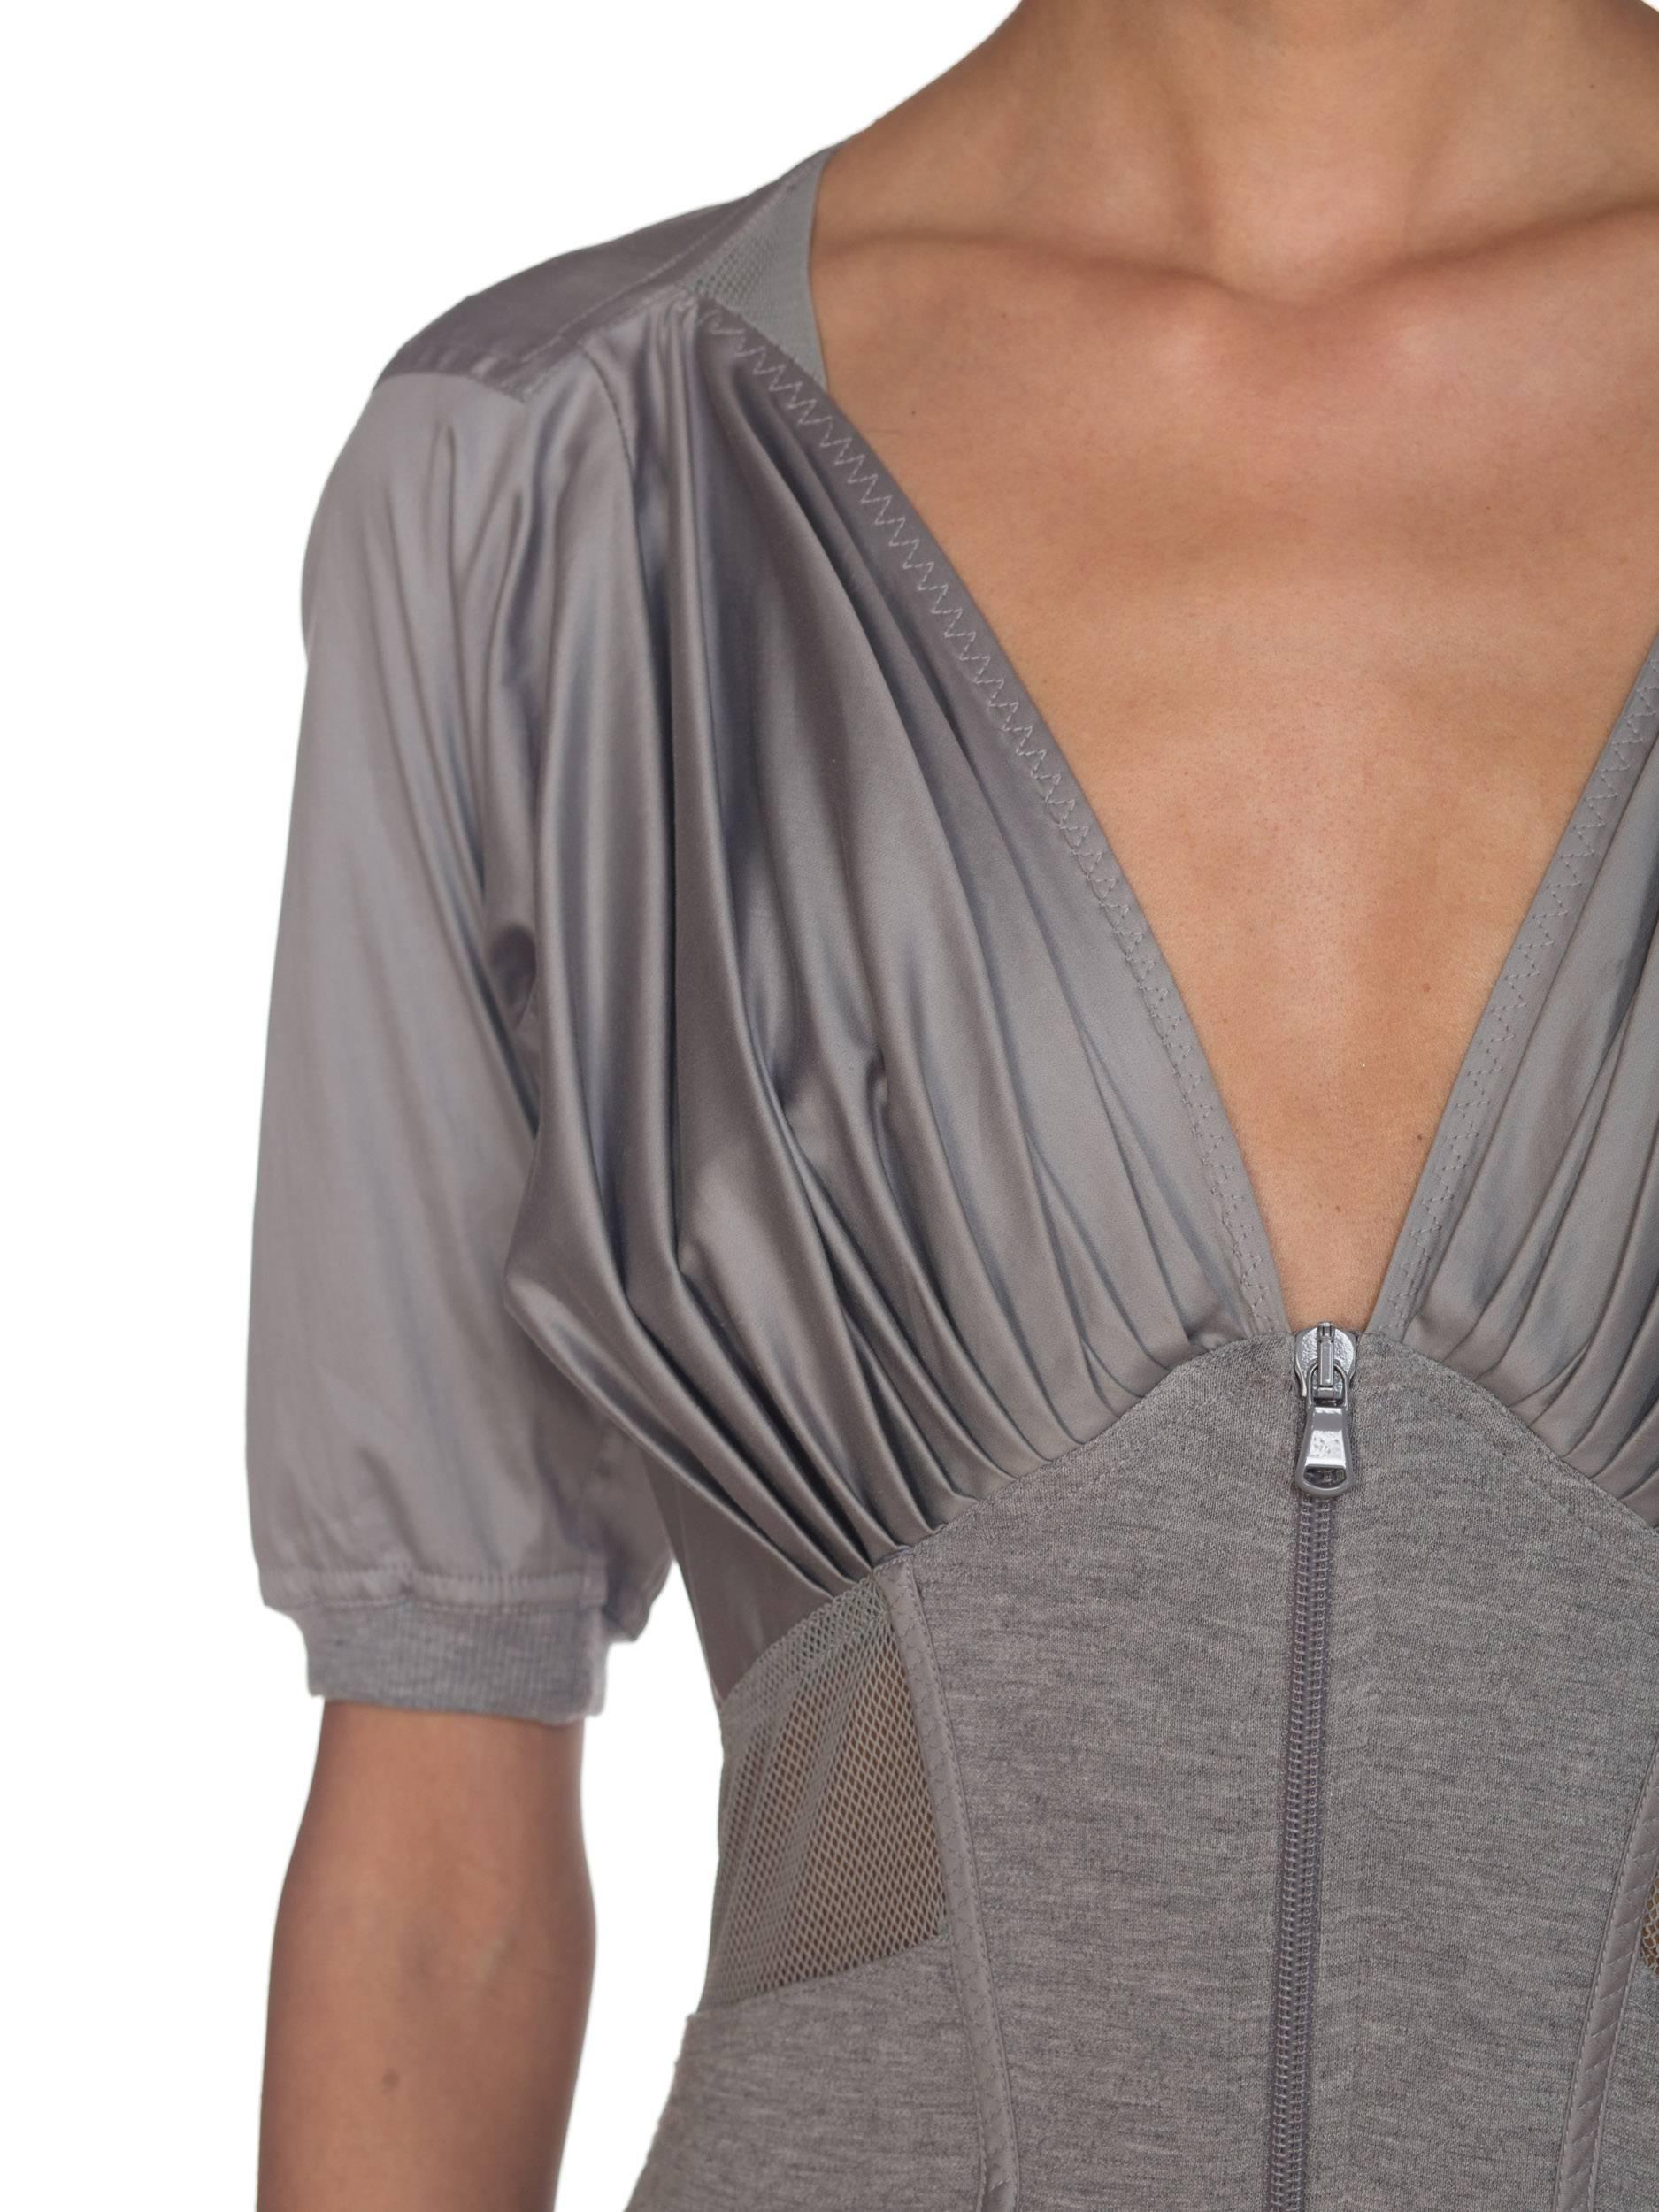 Donna Karan Collection Jersey & Net Boned Zipper Dress 7